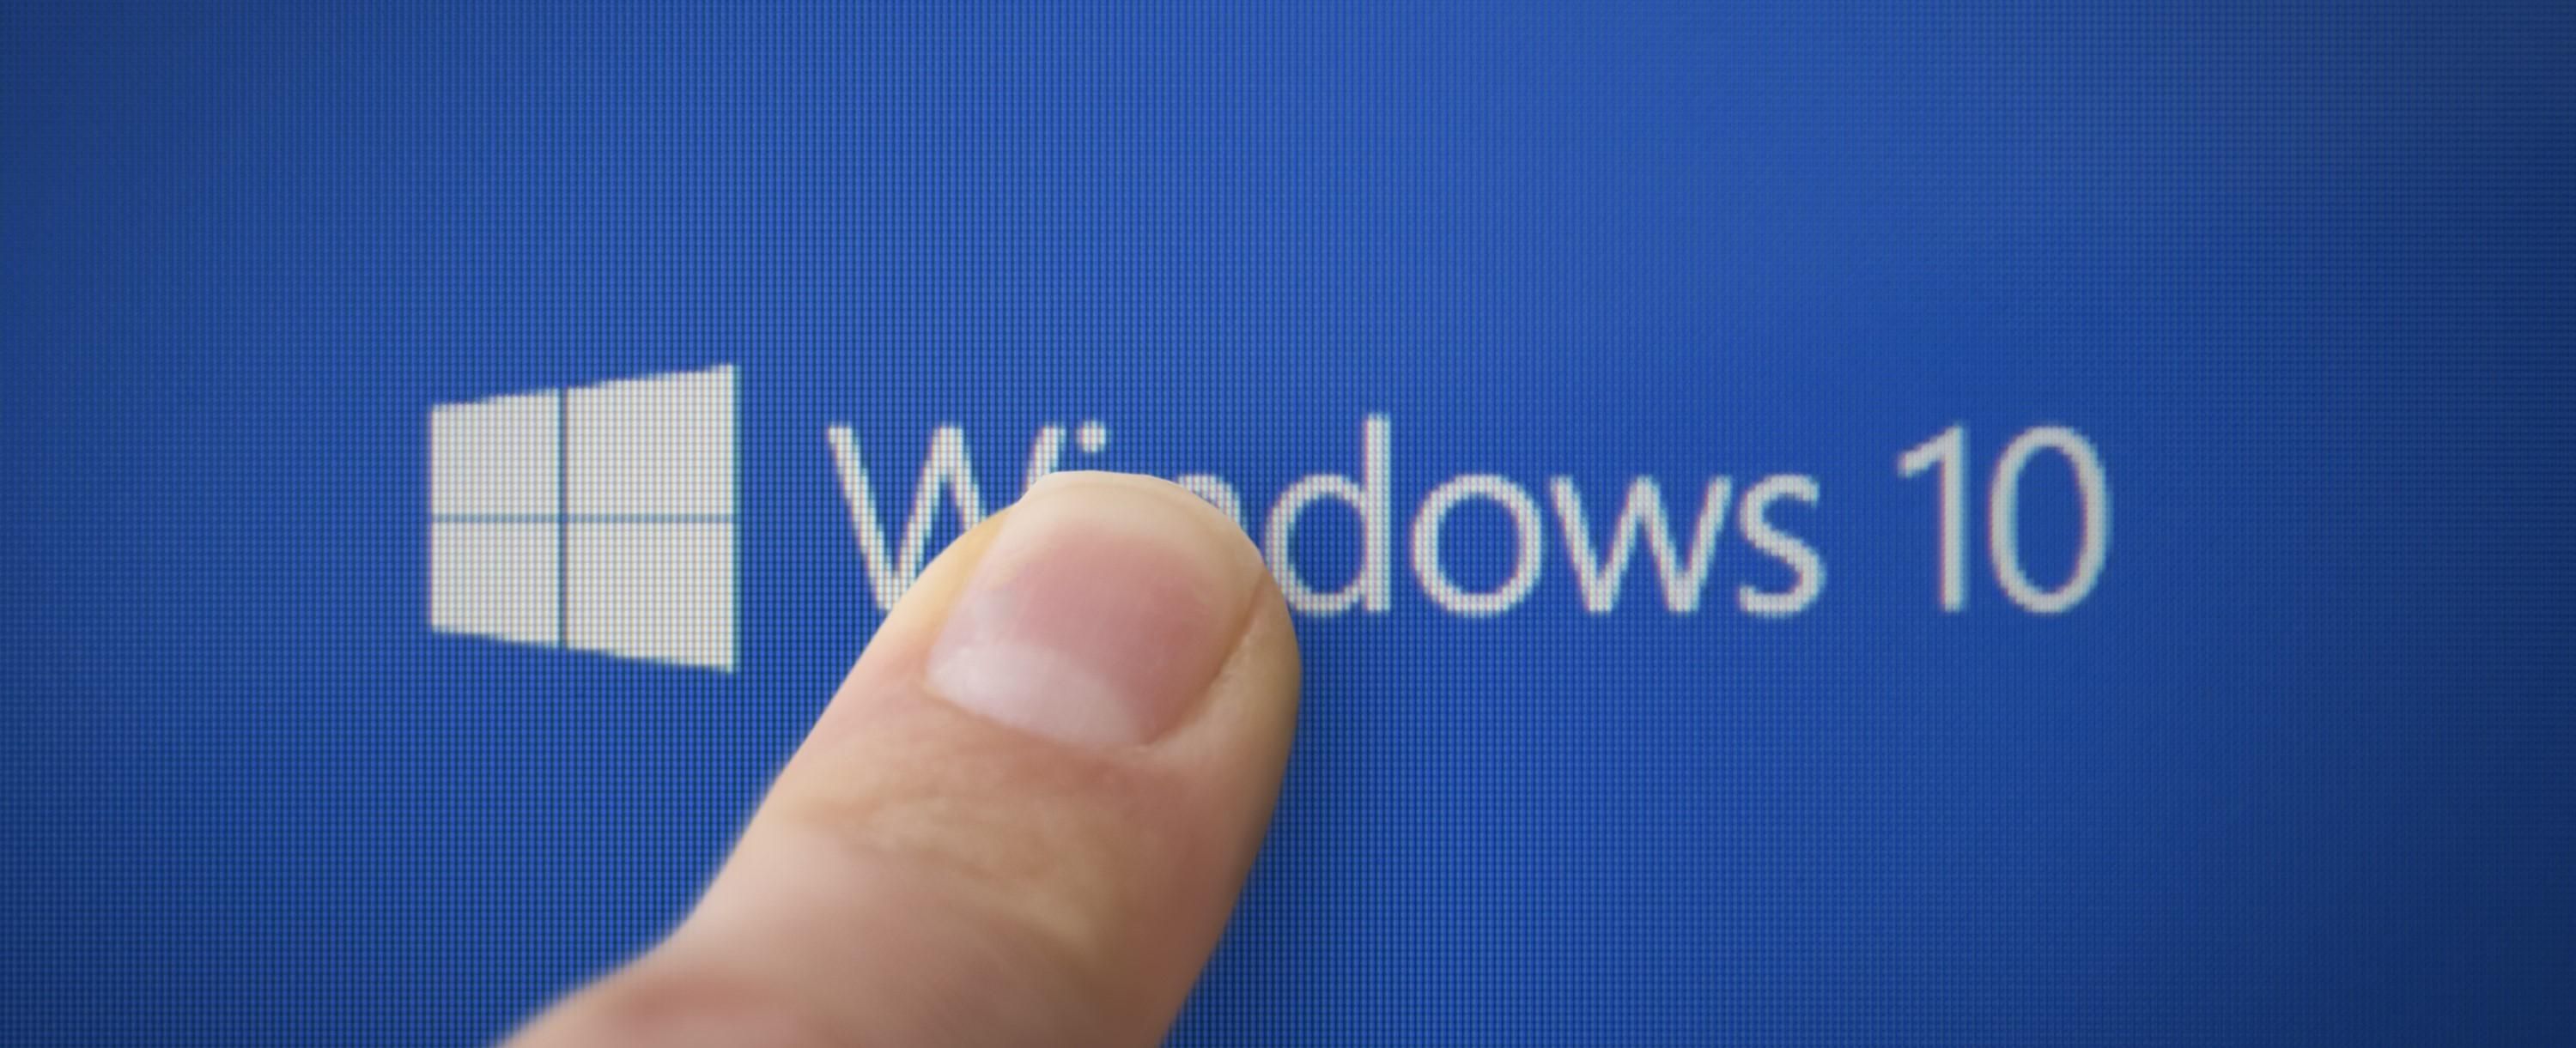 Sorra mondhatunk búcsút a korábbi Windows operációs rendszereknek